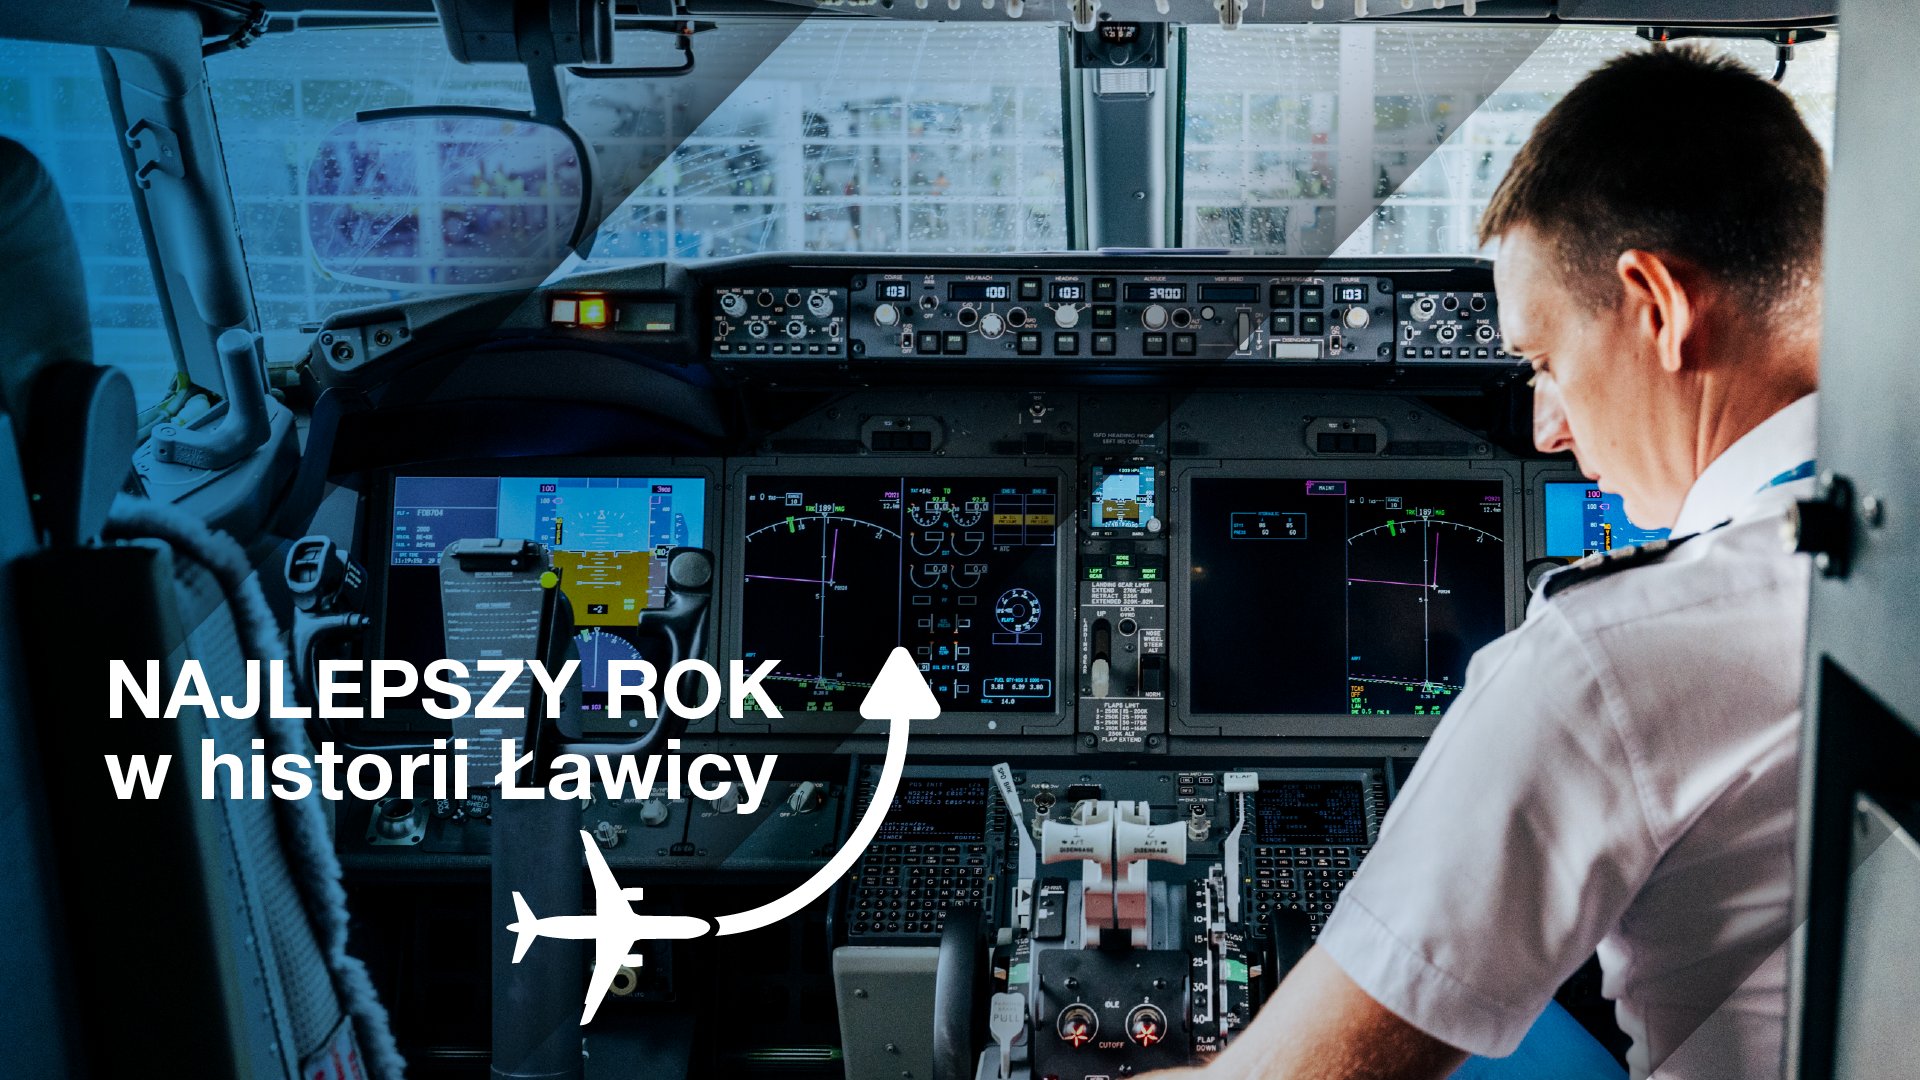 Obraz przedstawia zdjęcie kokpitu w samolocie, na nim widnieje piktogram samolotu oraz napis: Najlepszy rok w historii Ławicy.